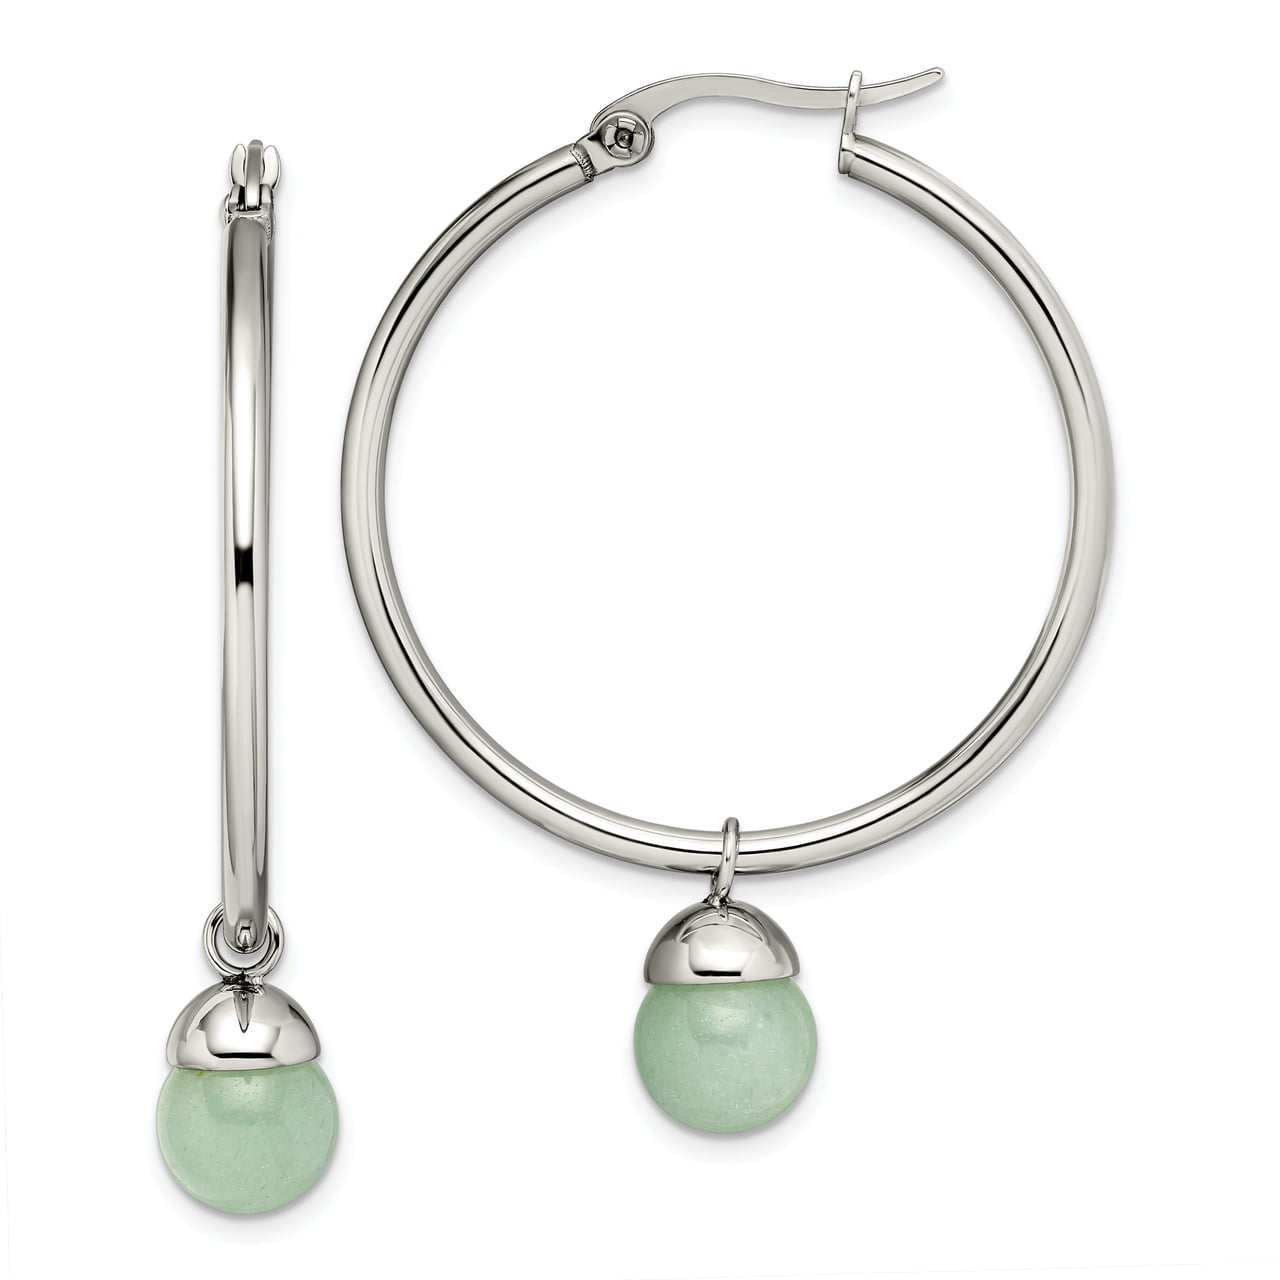 Boho Green stone Bead hoops earrings Gift for her Gemstone hoop earrings Stainless steel Aventurine Hoop Earrings